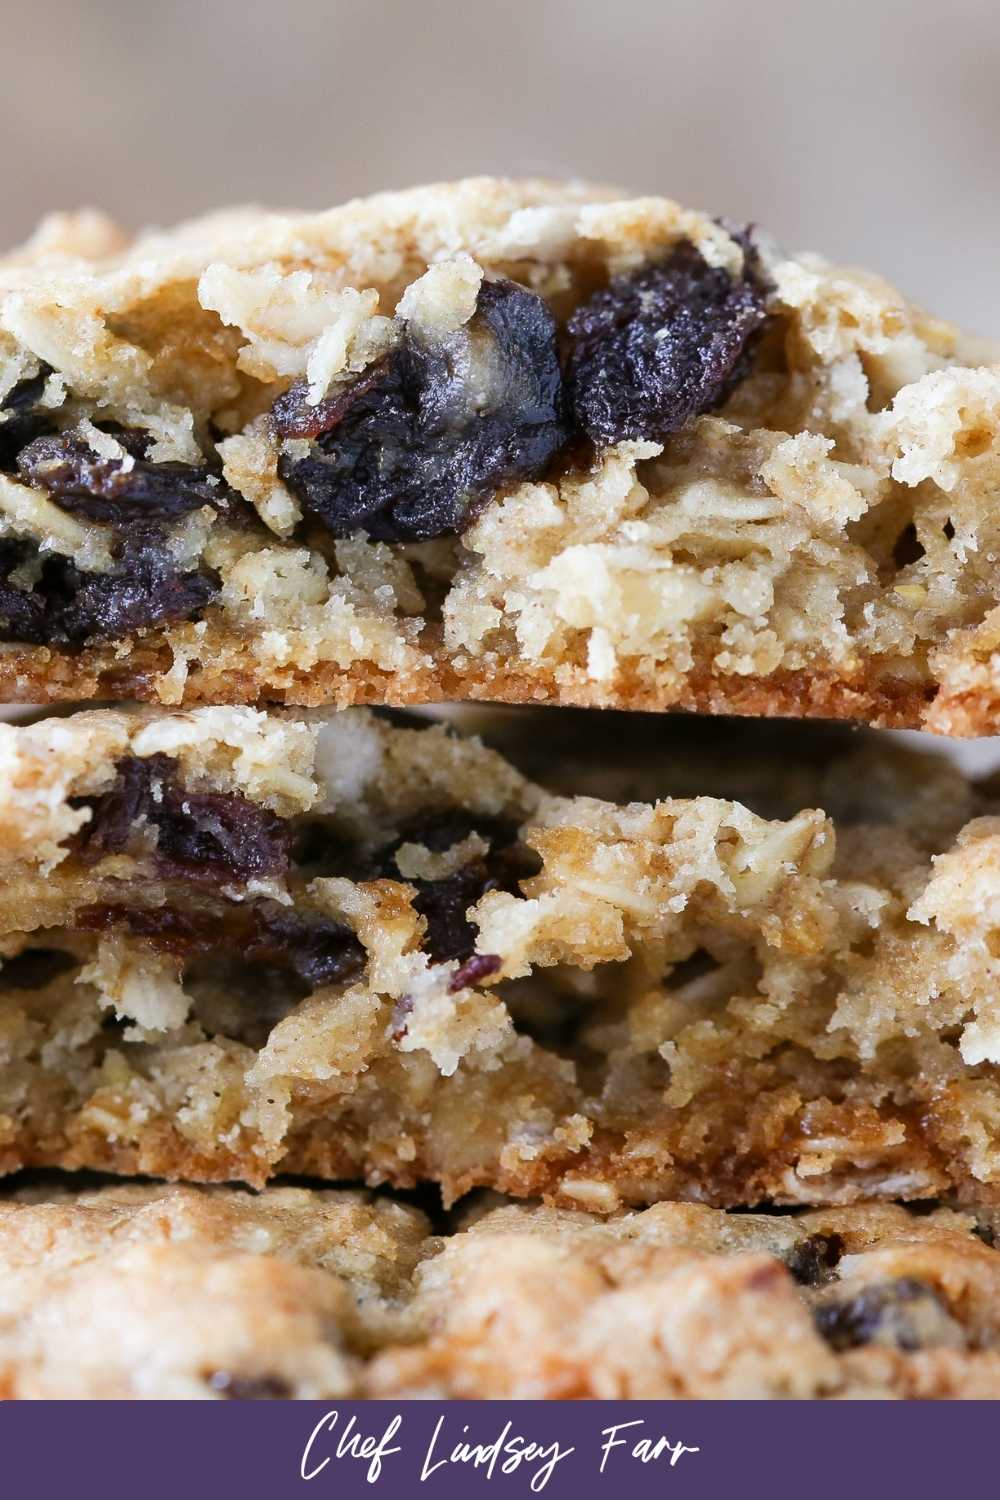 Raisin studded oatmeal raisin cookie interior.